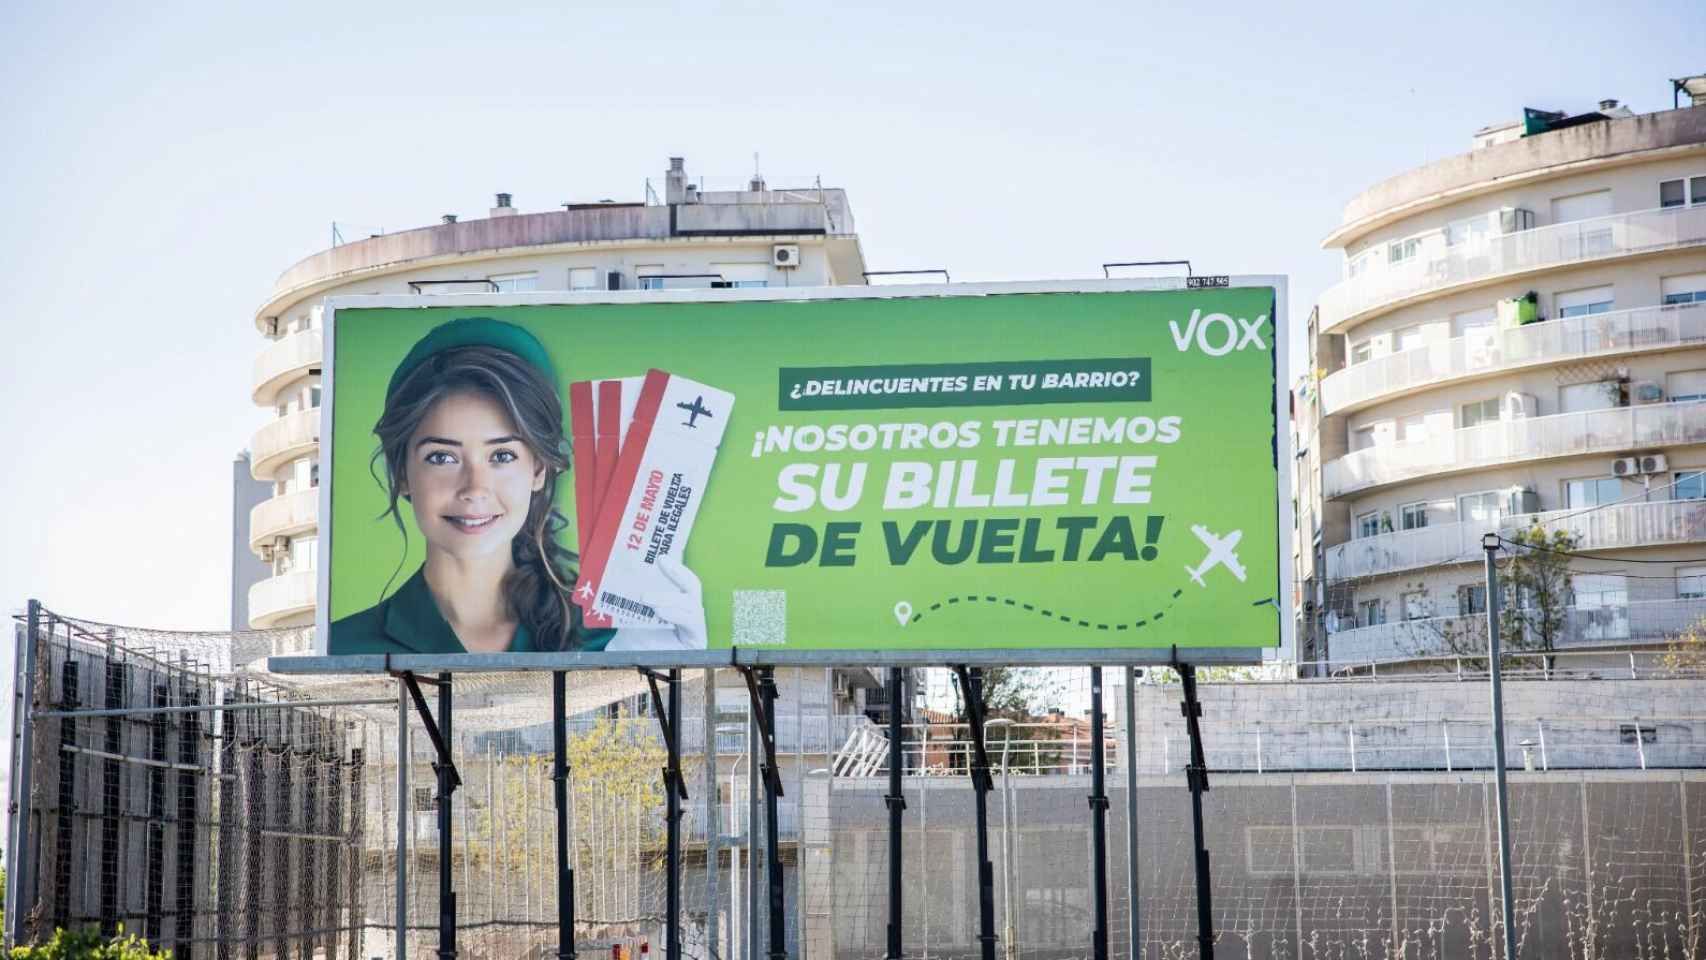 La campaña publicitaria de Vox en Terrassa